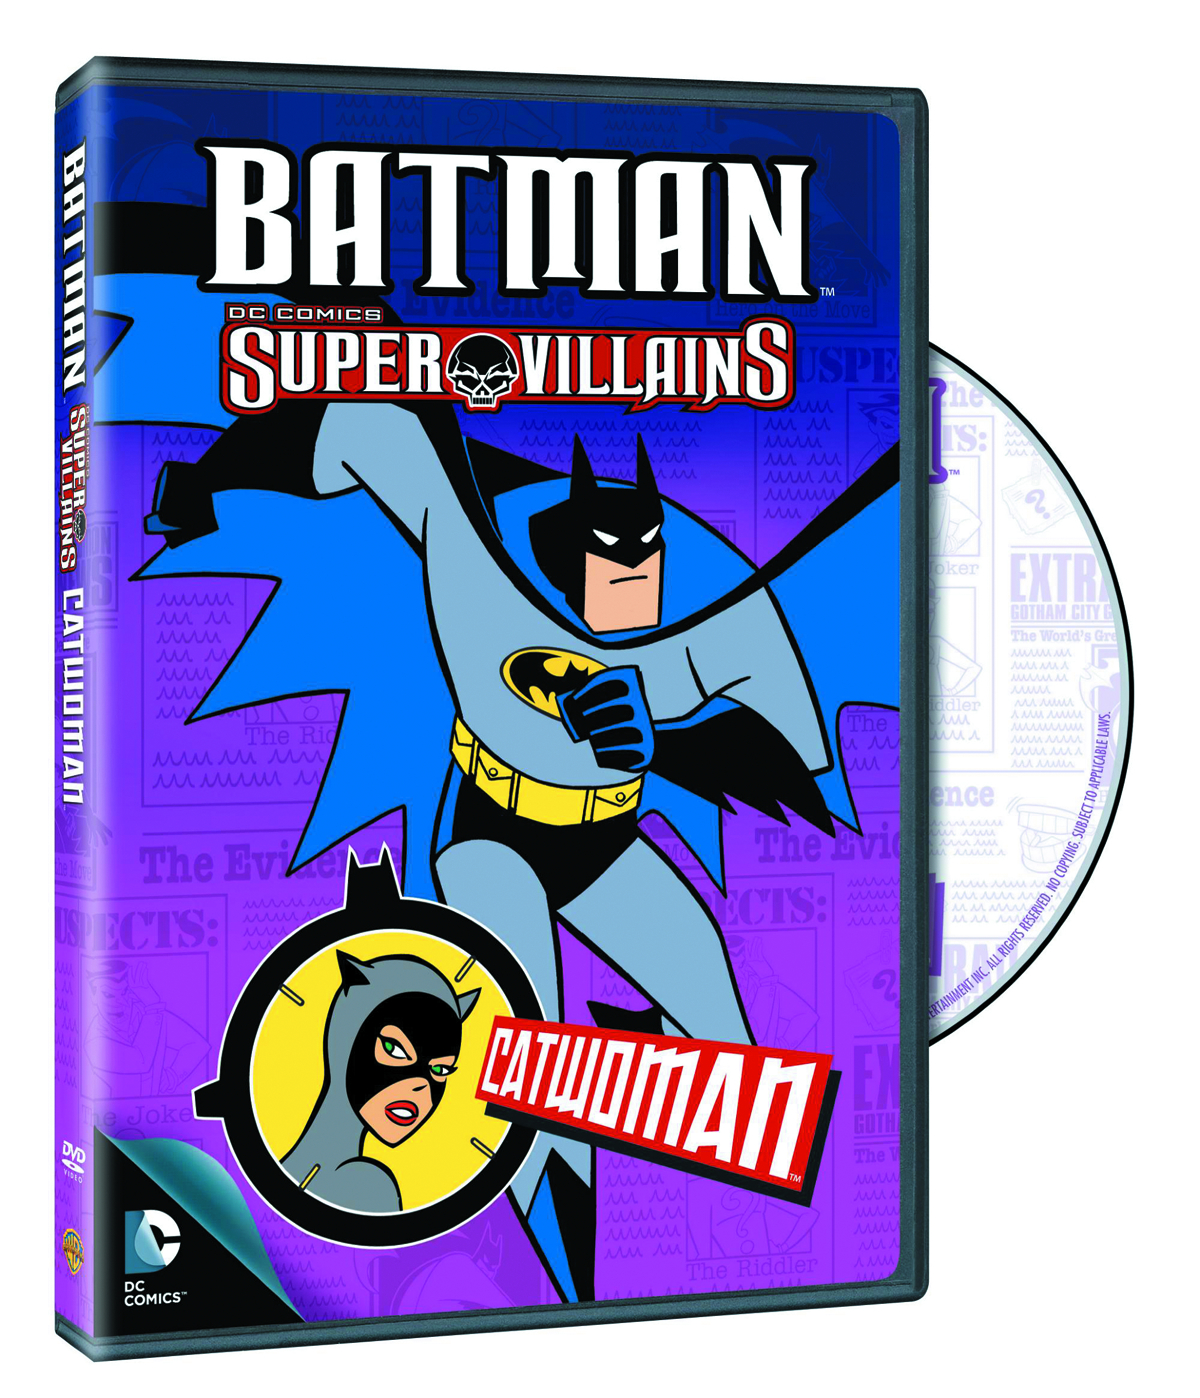 BATMAN SUPER VILLAINS CATWOMAN DVD